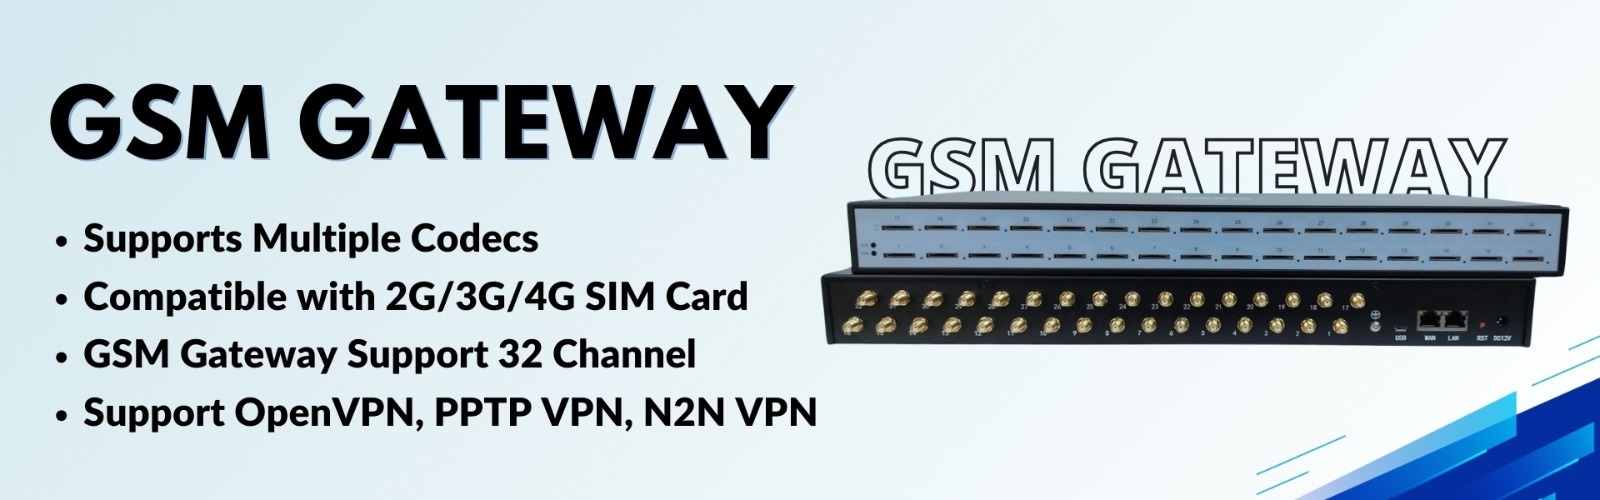 gsm gateway